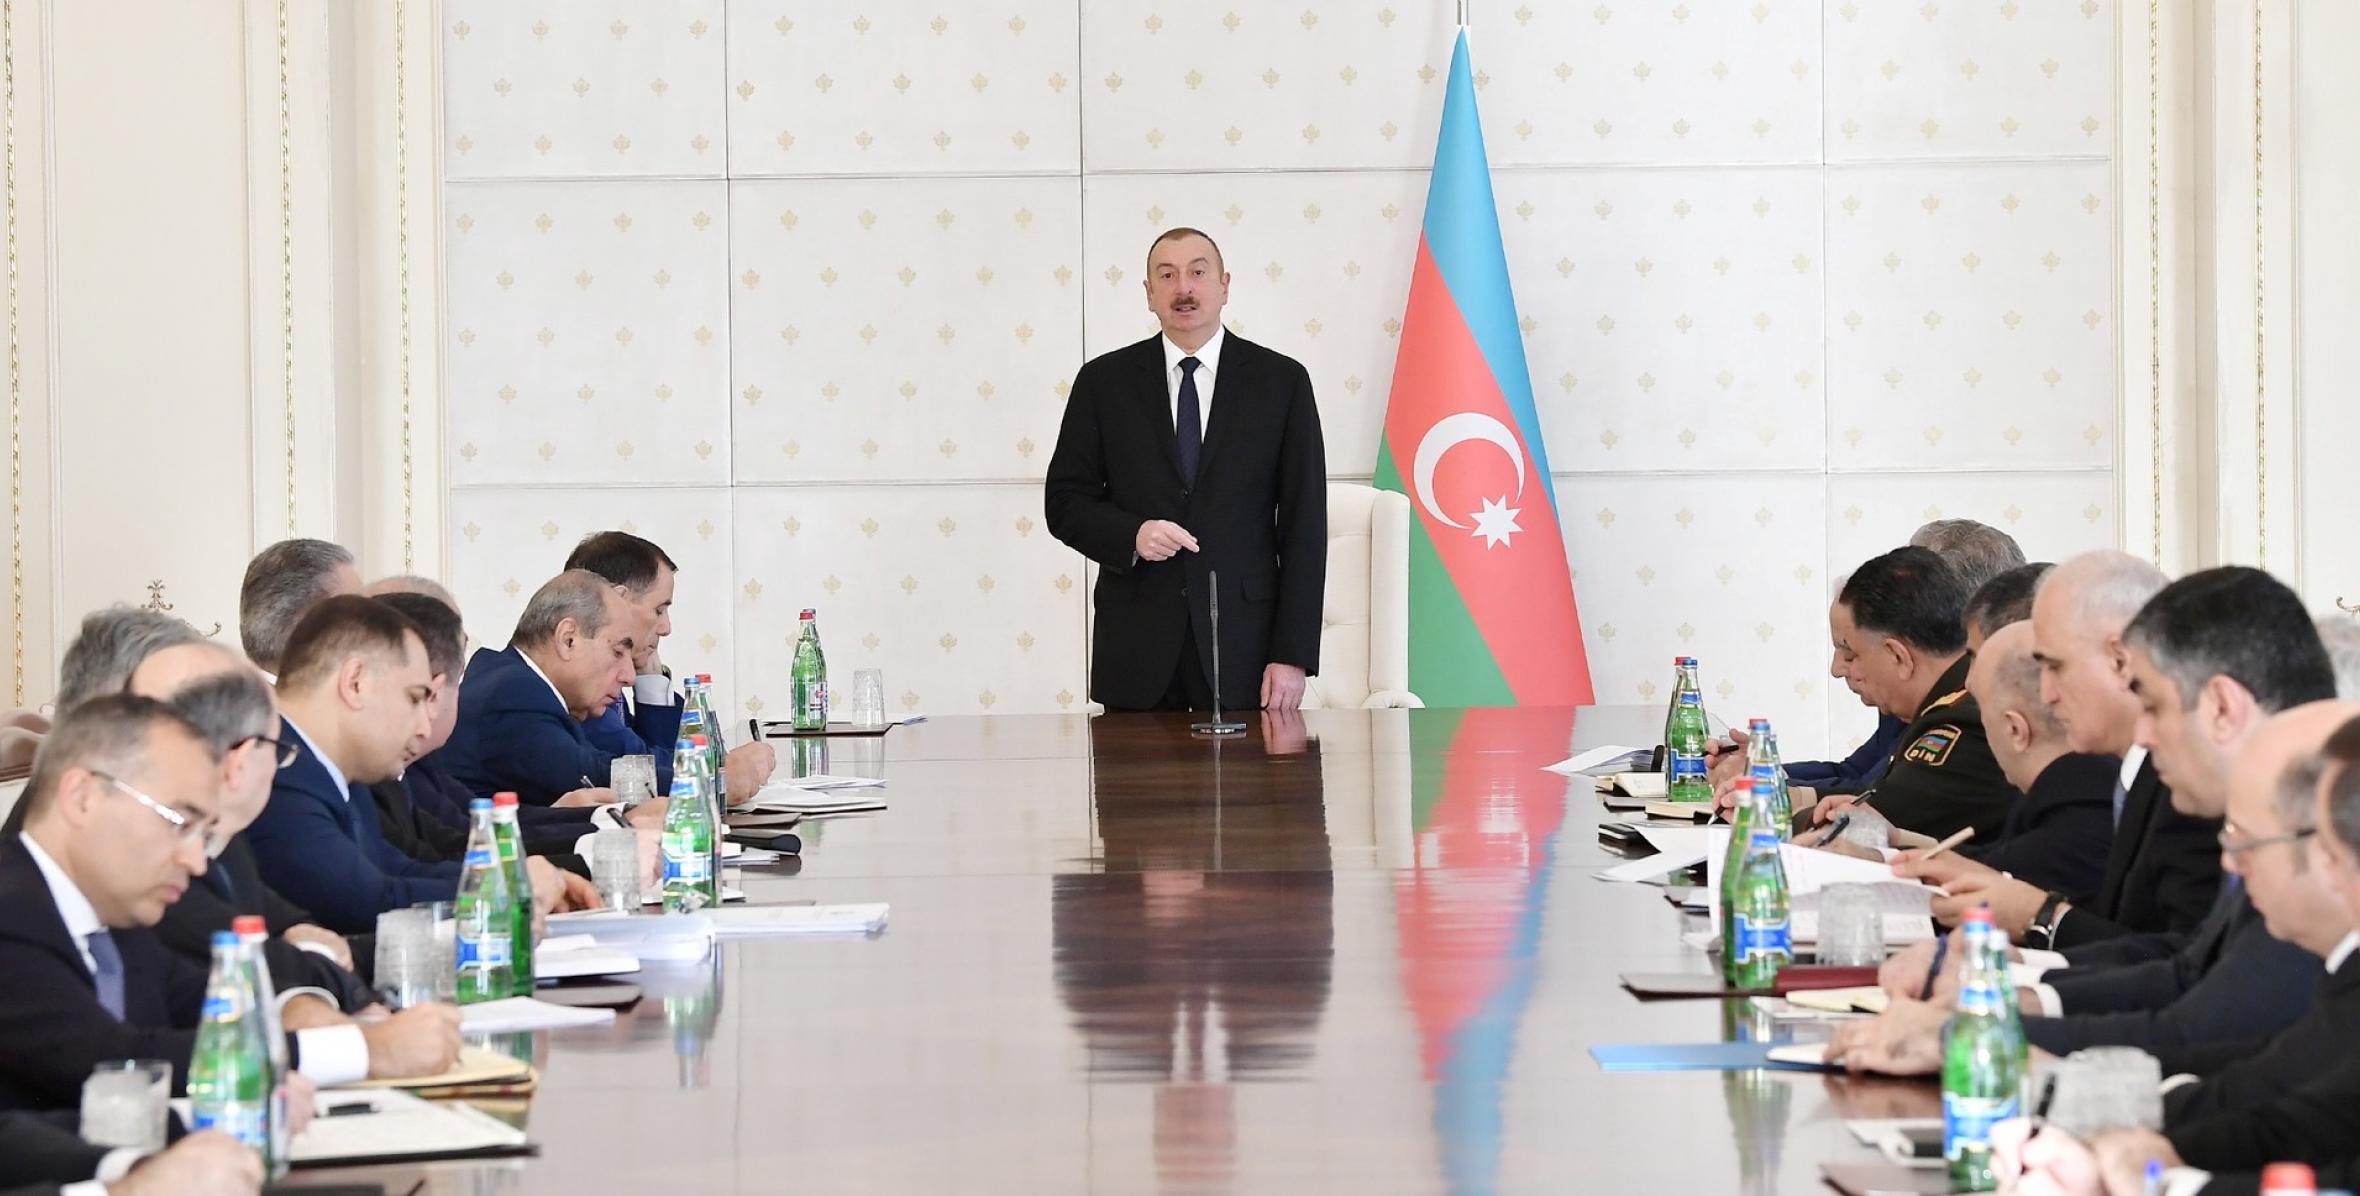 Вступительная речь Ильхама Алиева на заседании Кабинета Министров, посвященное итогам социально-экономического развития в 2018 году и предстоящим задачам